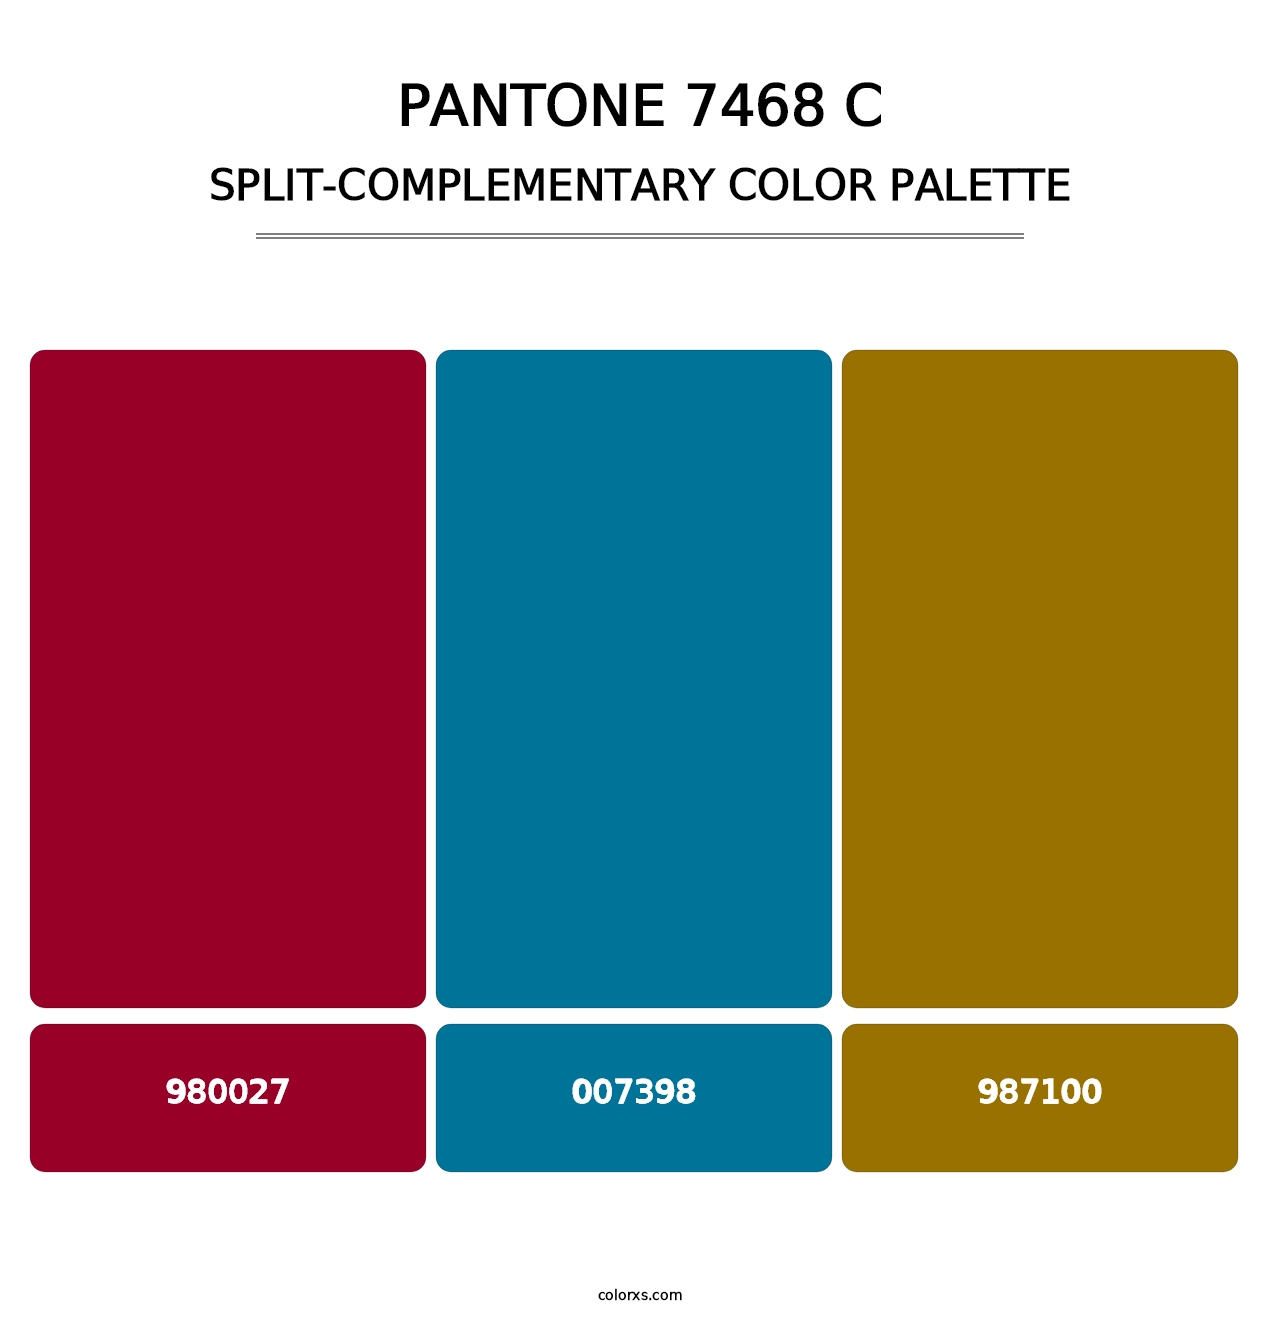 PANTONE 7468 C - Split-Complementary Color Palette